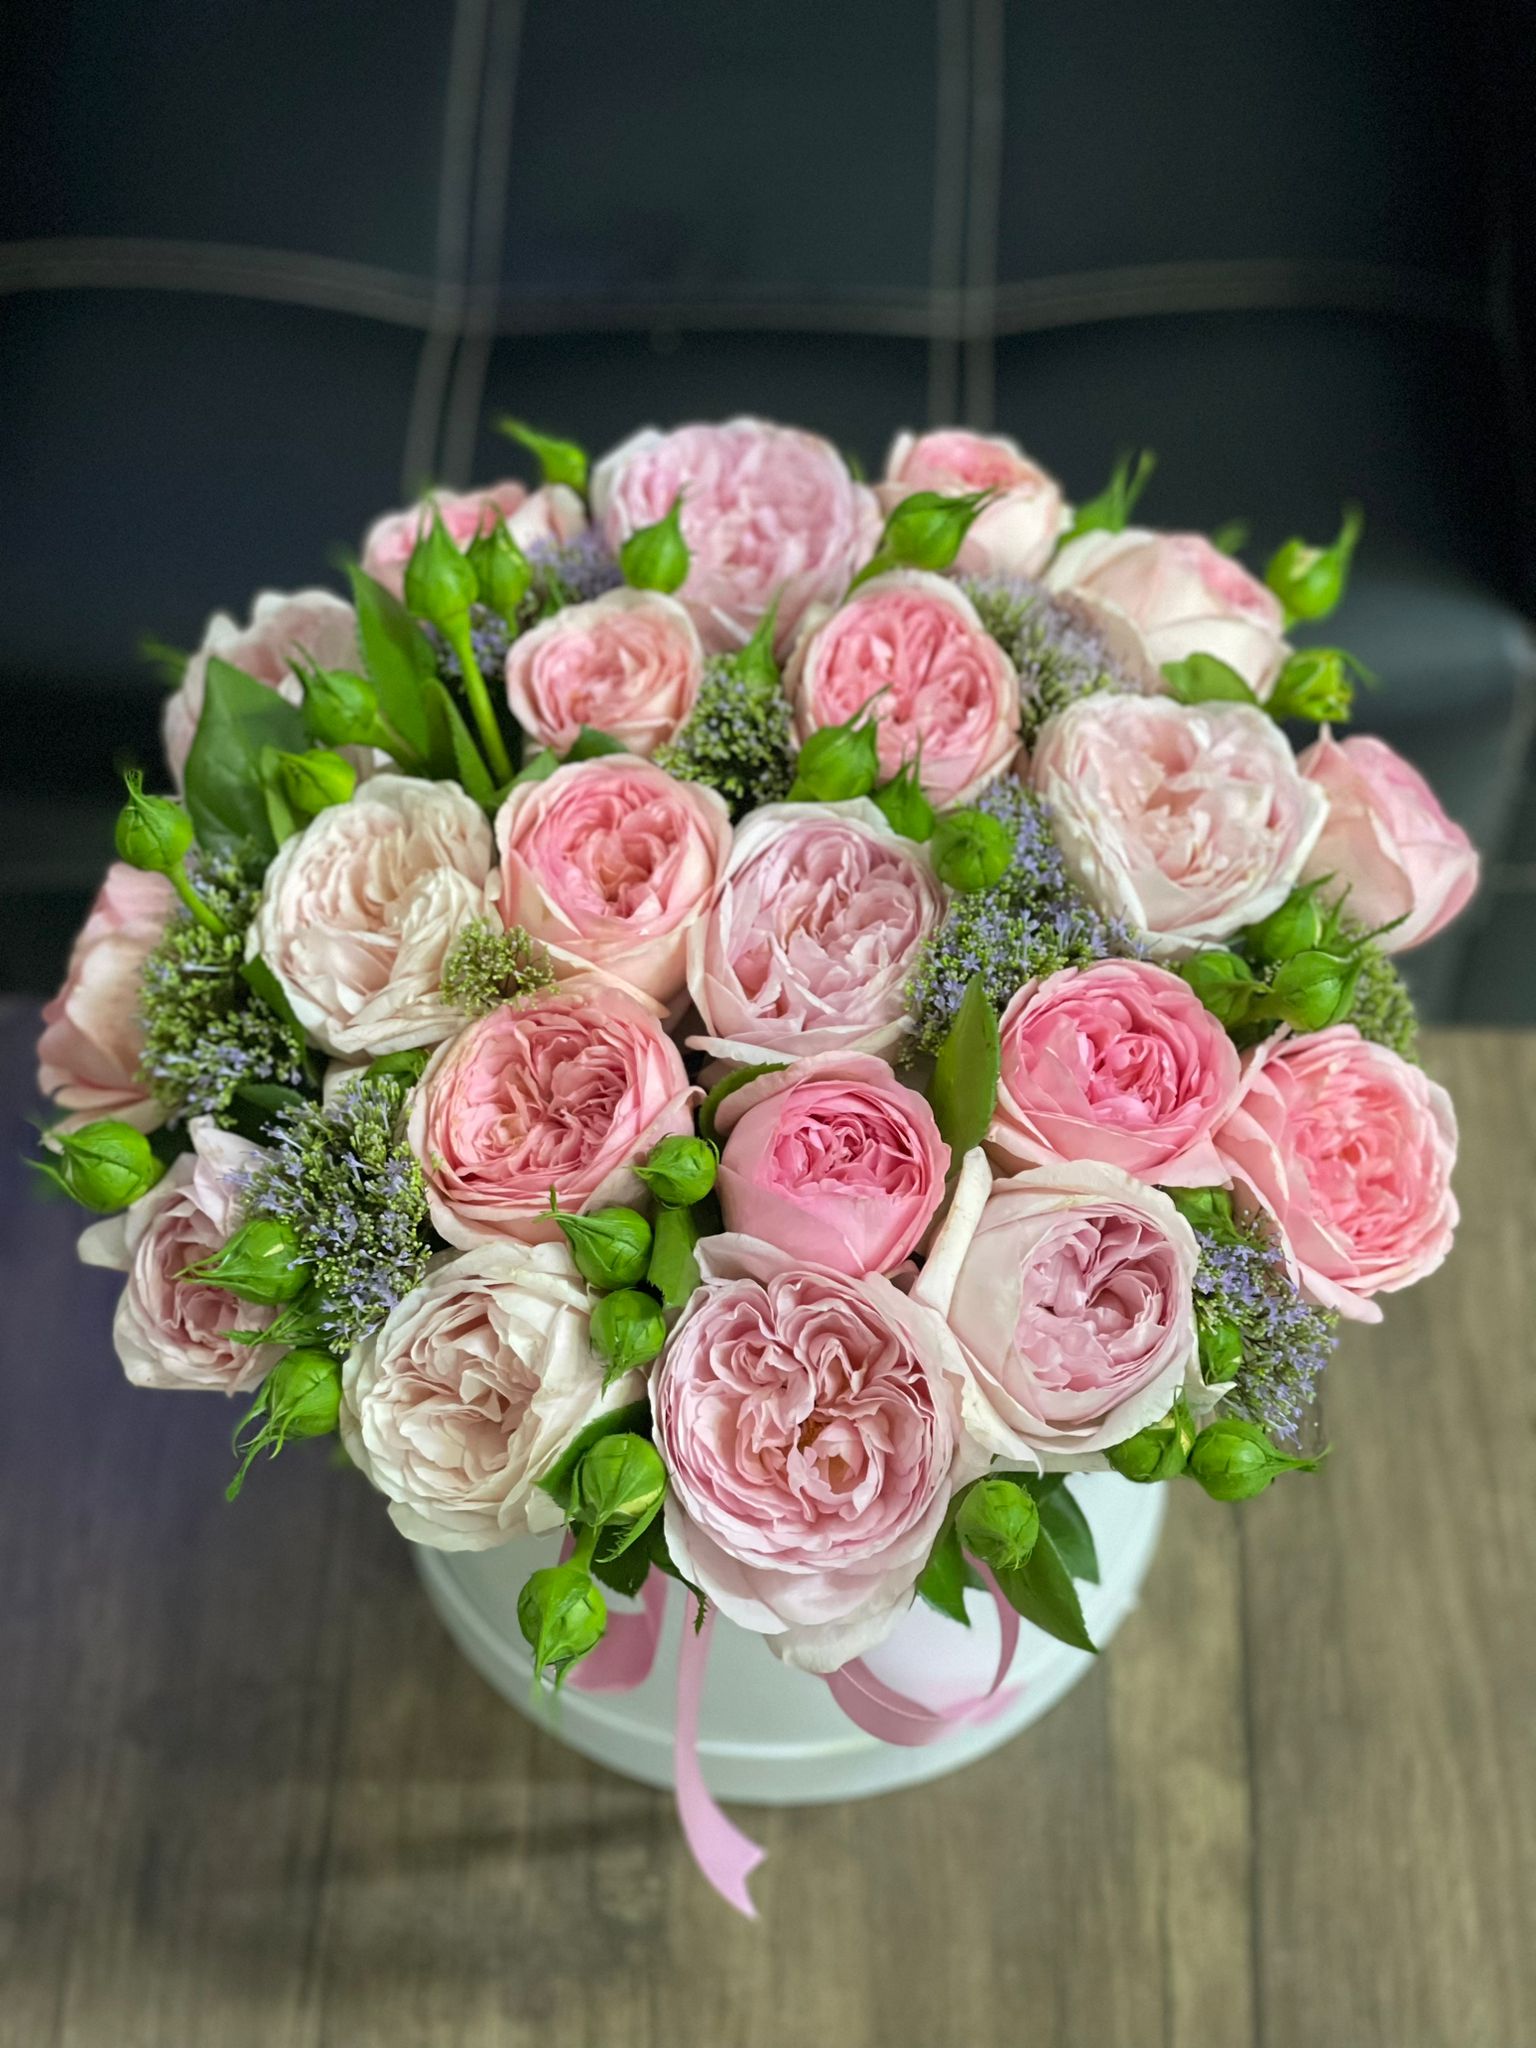  Цветок в Кемер  21 штука пионовидных роз в белой коробке